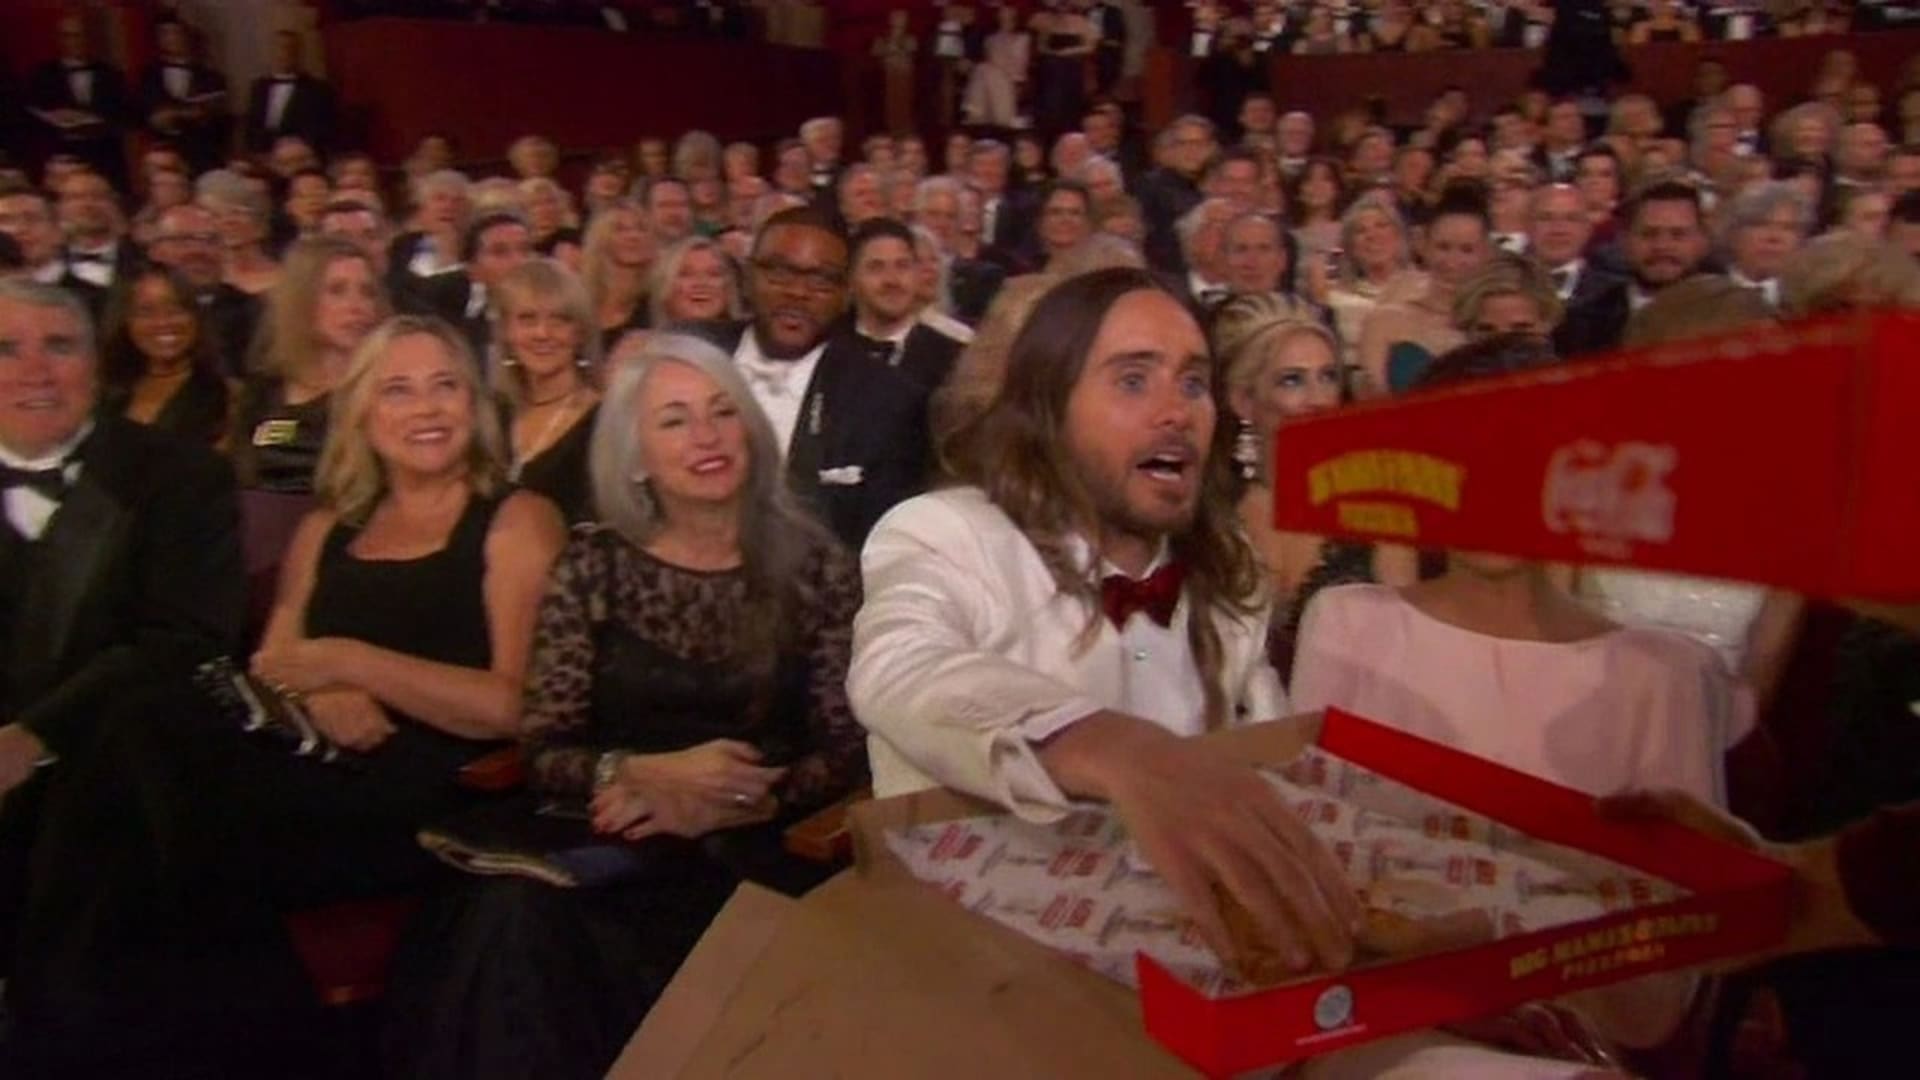 "Dá si někdo pizzu?" Podívejte se, jak se ládovali na Oscarech. Poslíček s pizzou na tuto objednávku nikdy nezapomene. Moderátorka Ellen DeGeneres objednala pizzu, kterou roznášela spolu s poslíčkem mezi publikem na 86. ročníku předávání Oscarů.